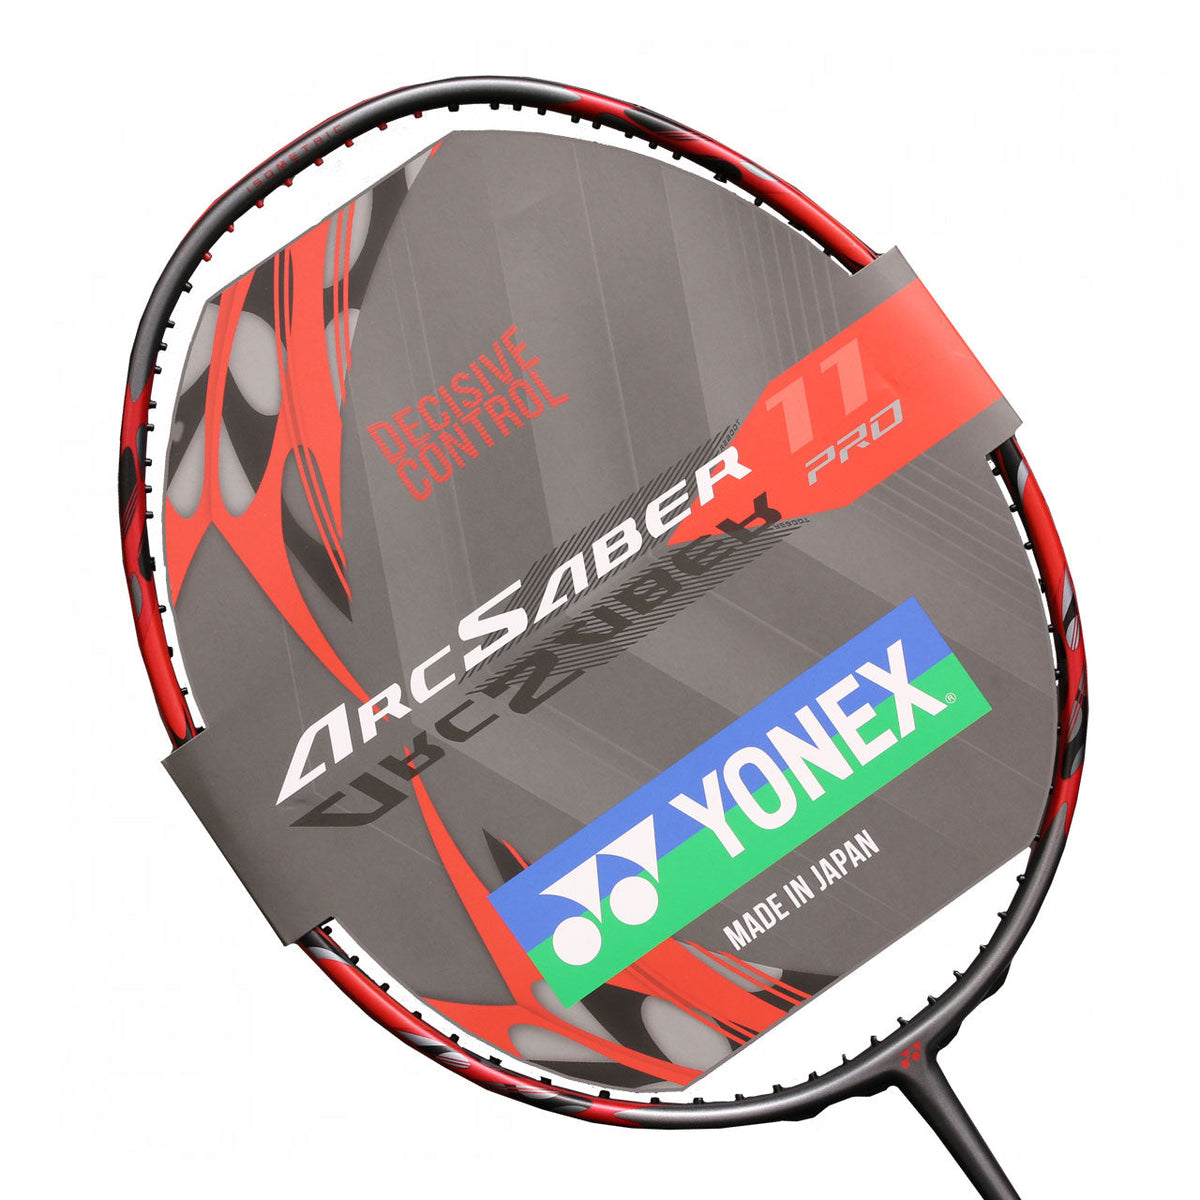 DEMO Racket- Yonex Arcsaber 11 Pro